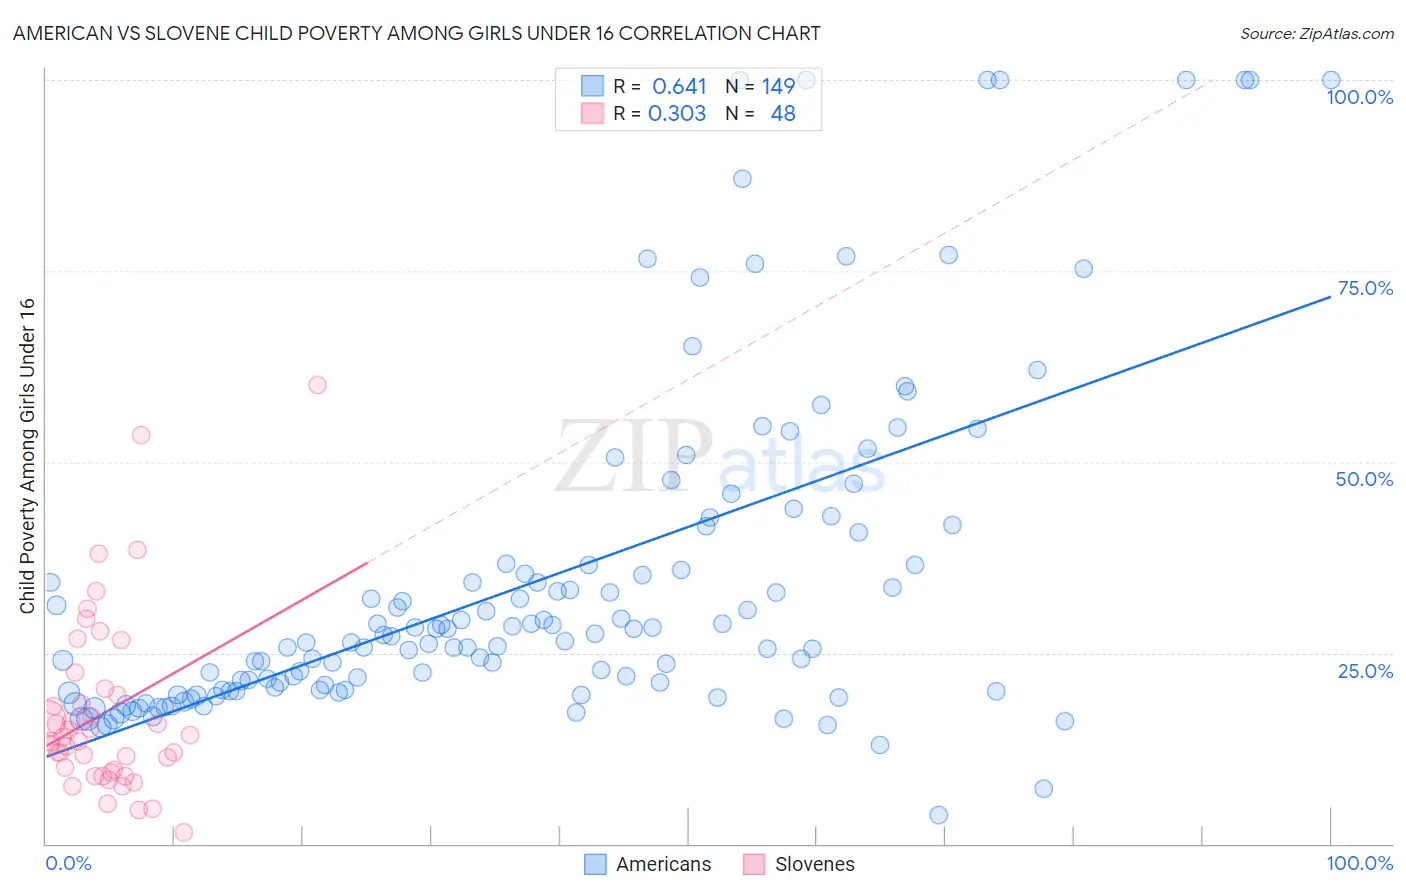 American vs Slovene Child Poverty Among Girls Under 16